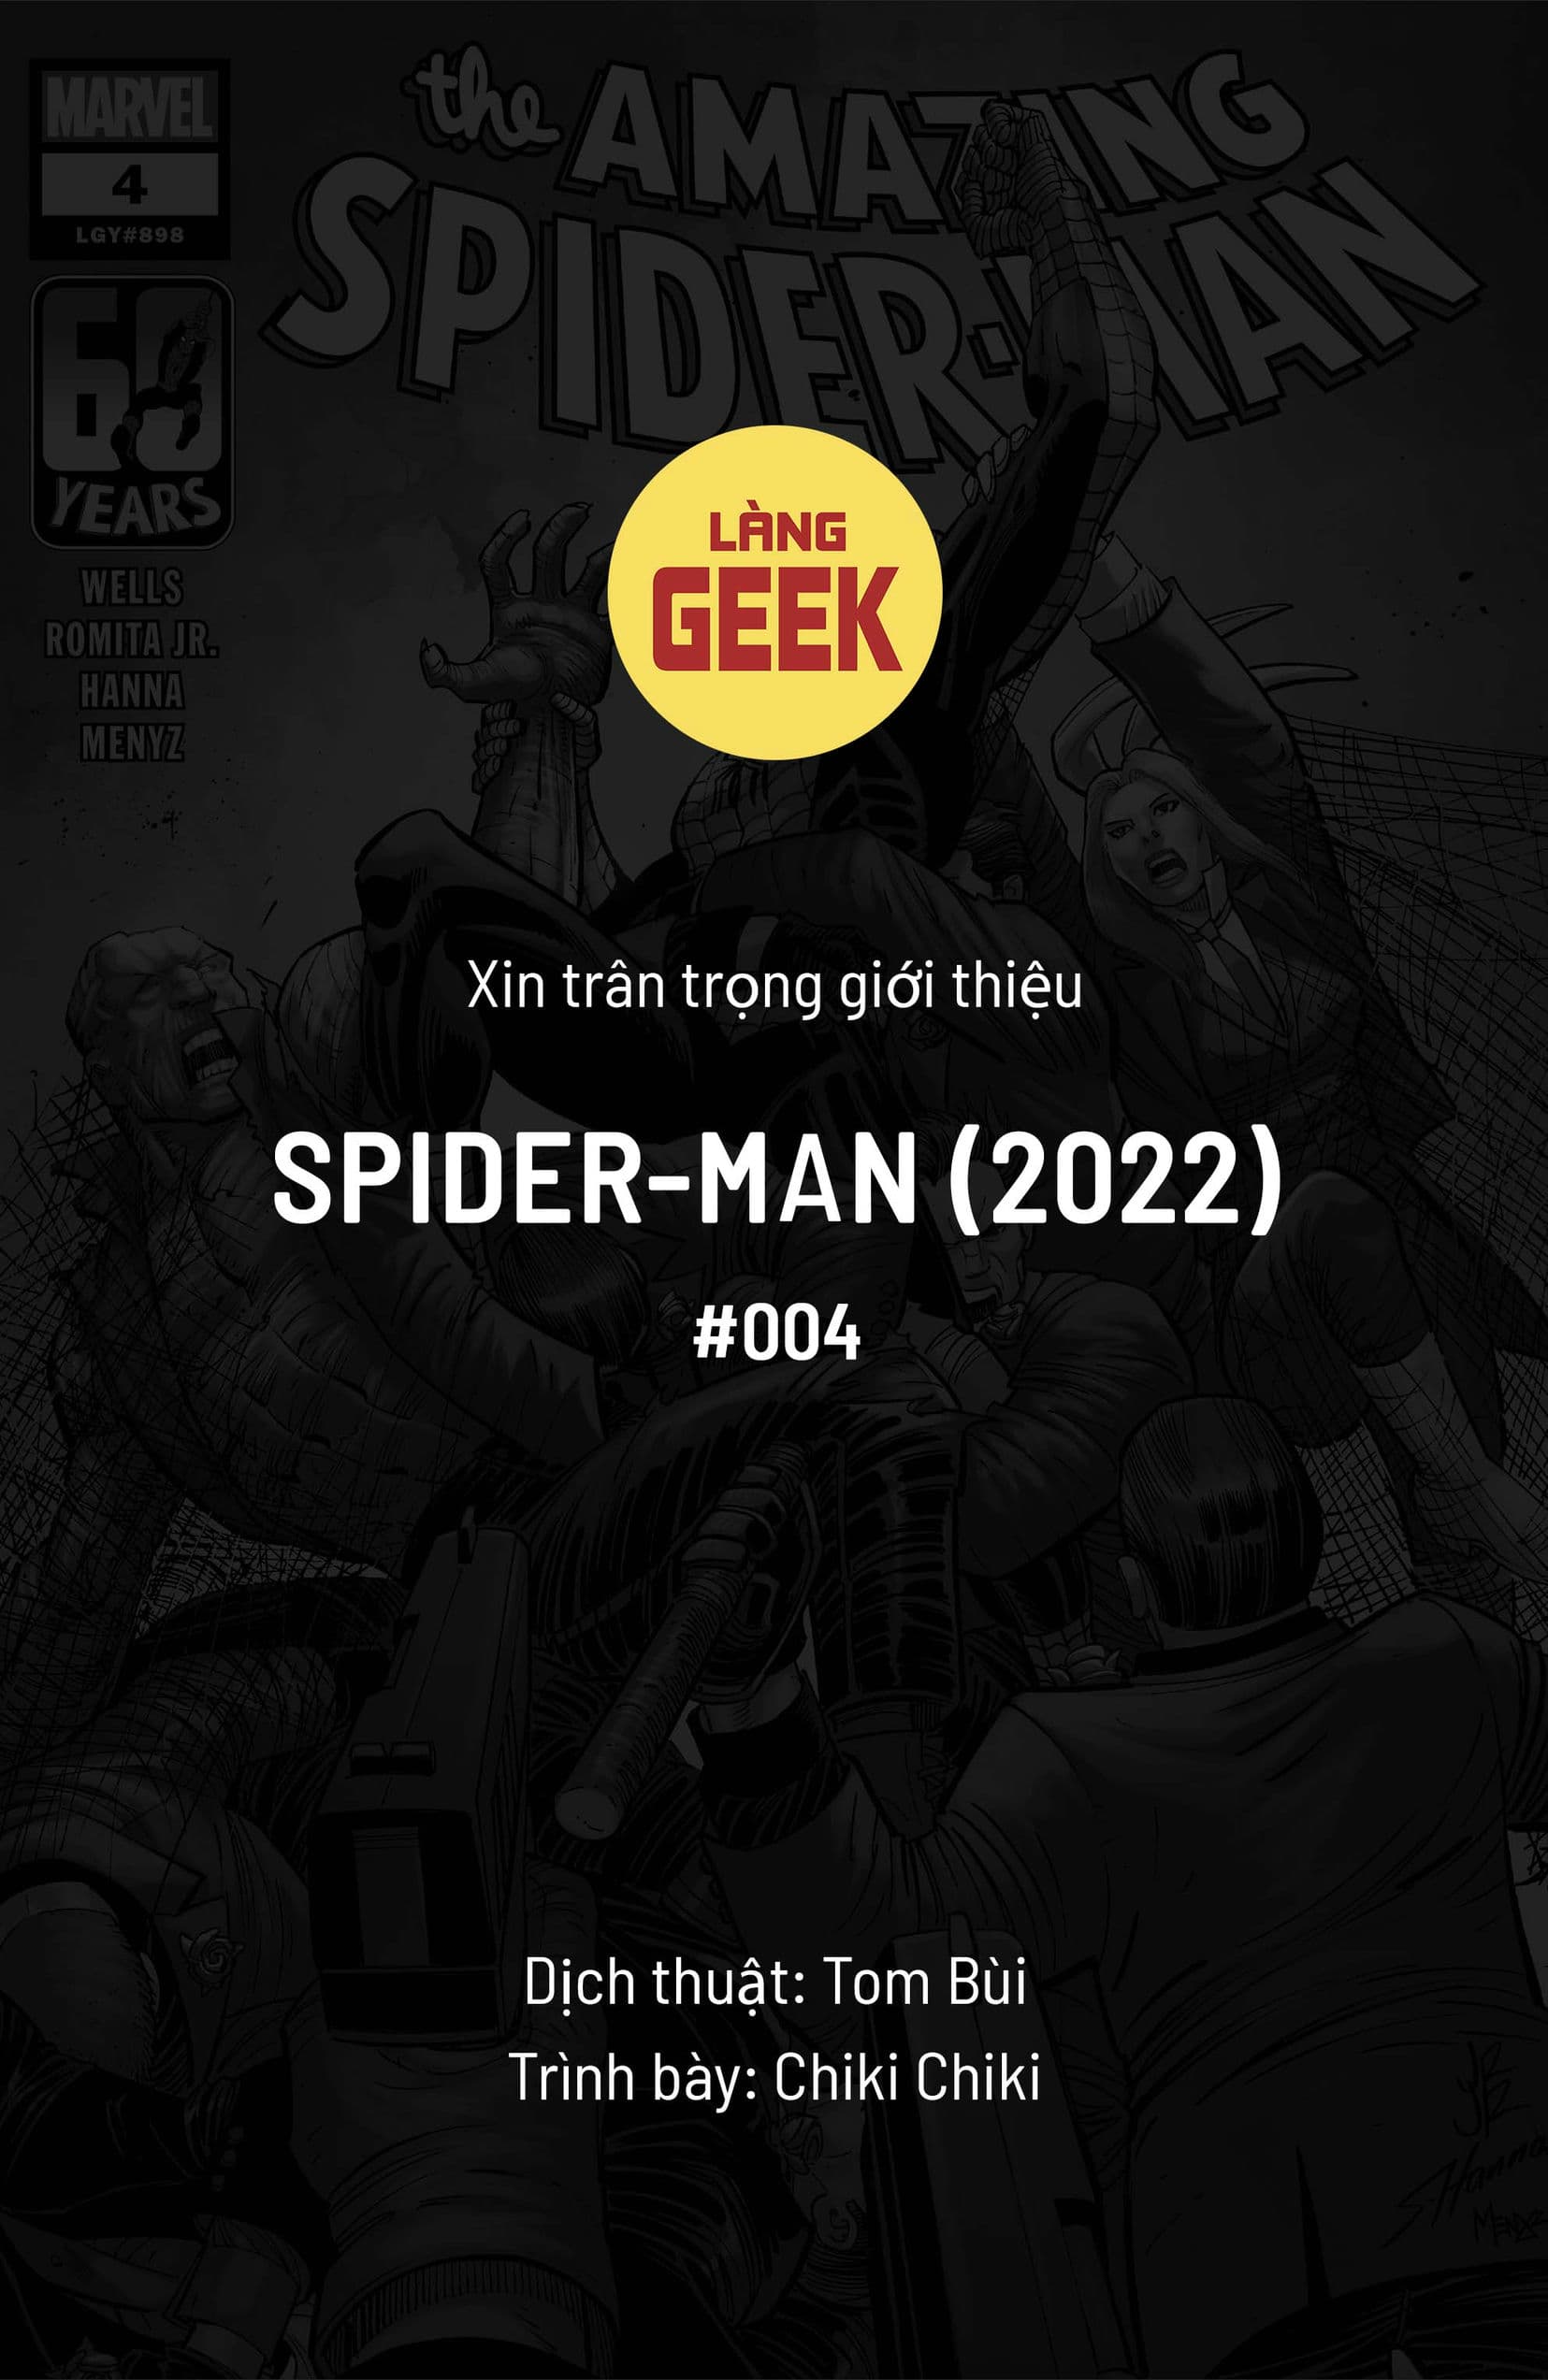 https://langgeek.net/wp-content/webpc-passthru.php?src=https://langgeek.net/wp-content/uploads/2023/04/Amazing-Spider-Man-2022-004-000-1.jpg&nocache=1